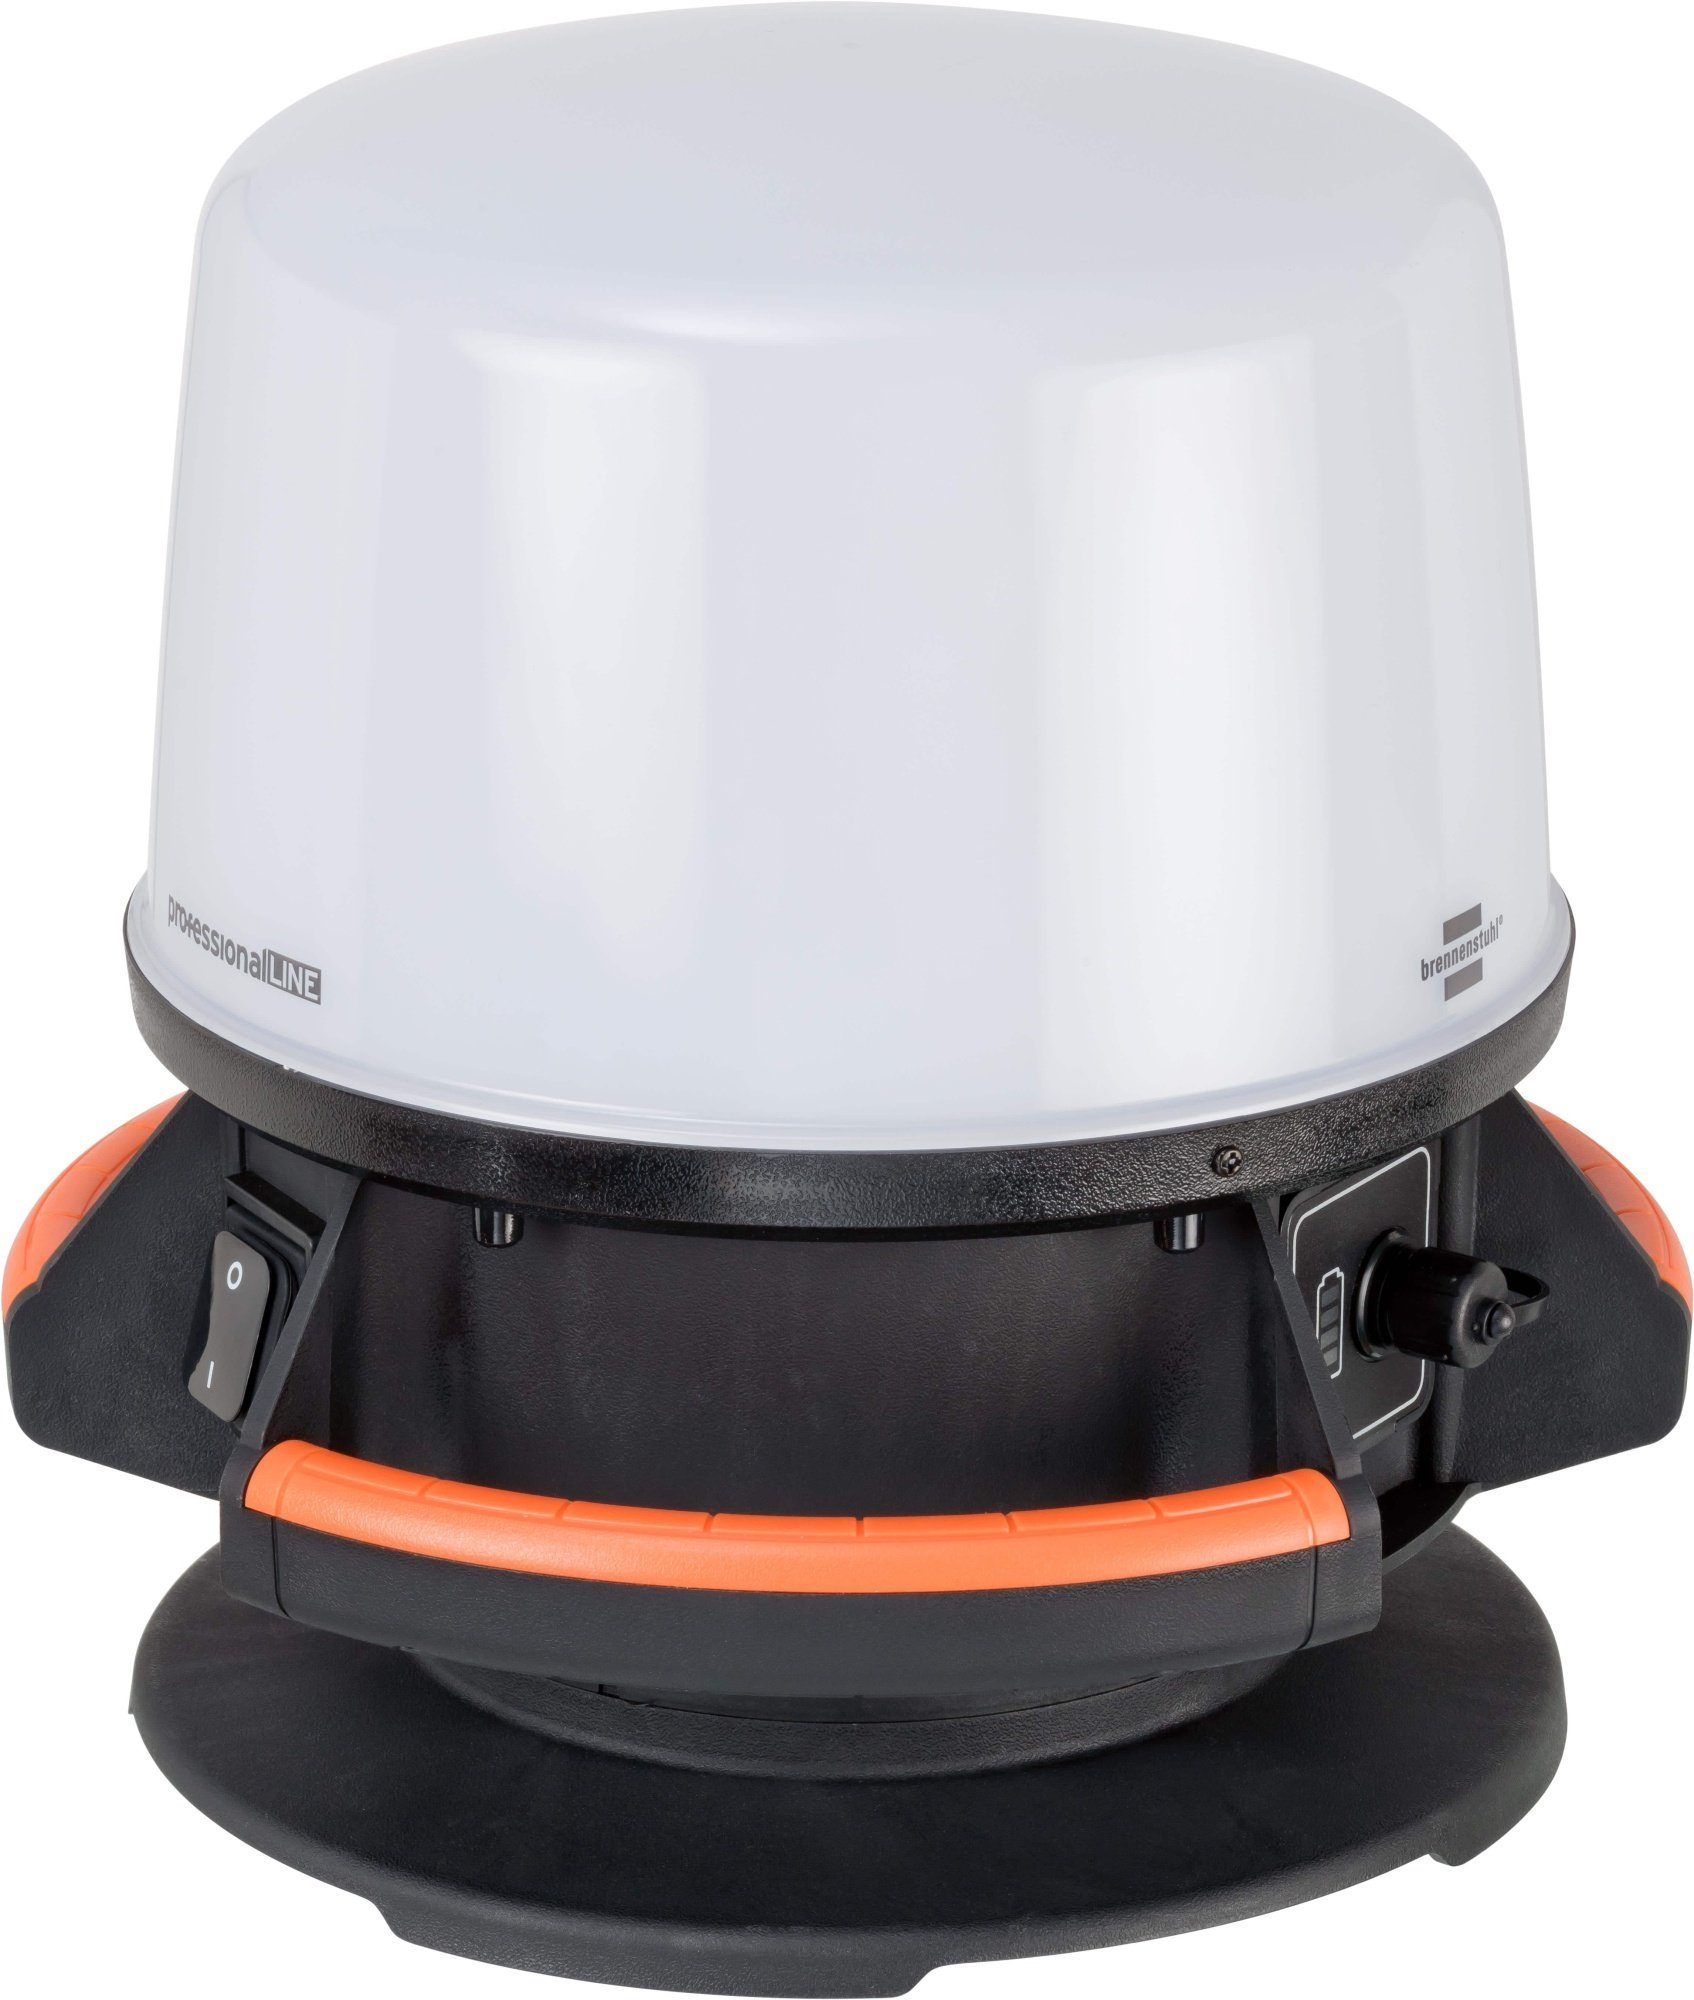 qpool24 Baustrahler, Brennenstuhl professionalLINE Hybrid LED 360° Mobiler Strahler